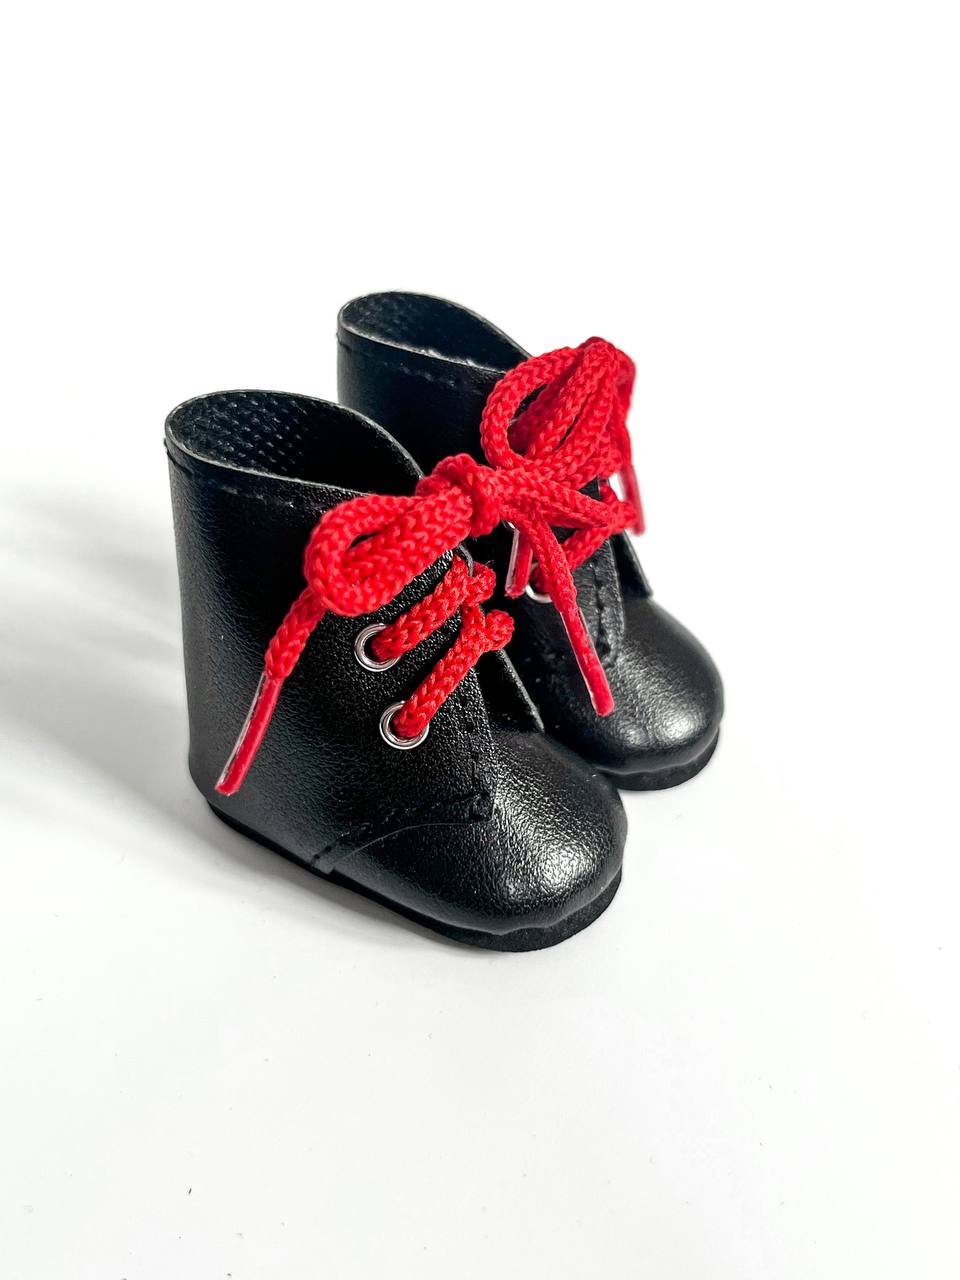 Paola Reina Ботинки черные с красными шнурками, для кукол 32 см, арт. 63225